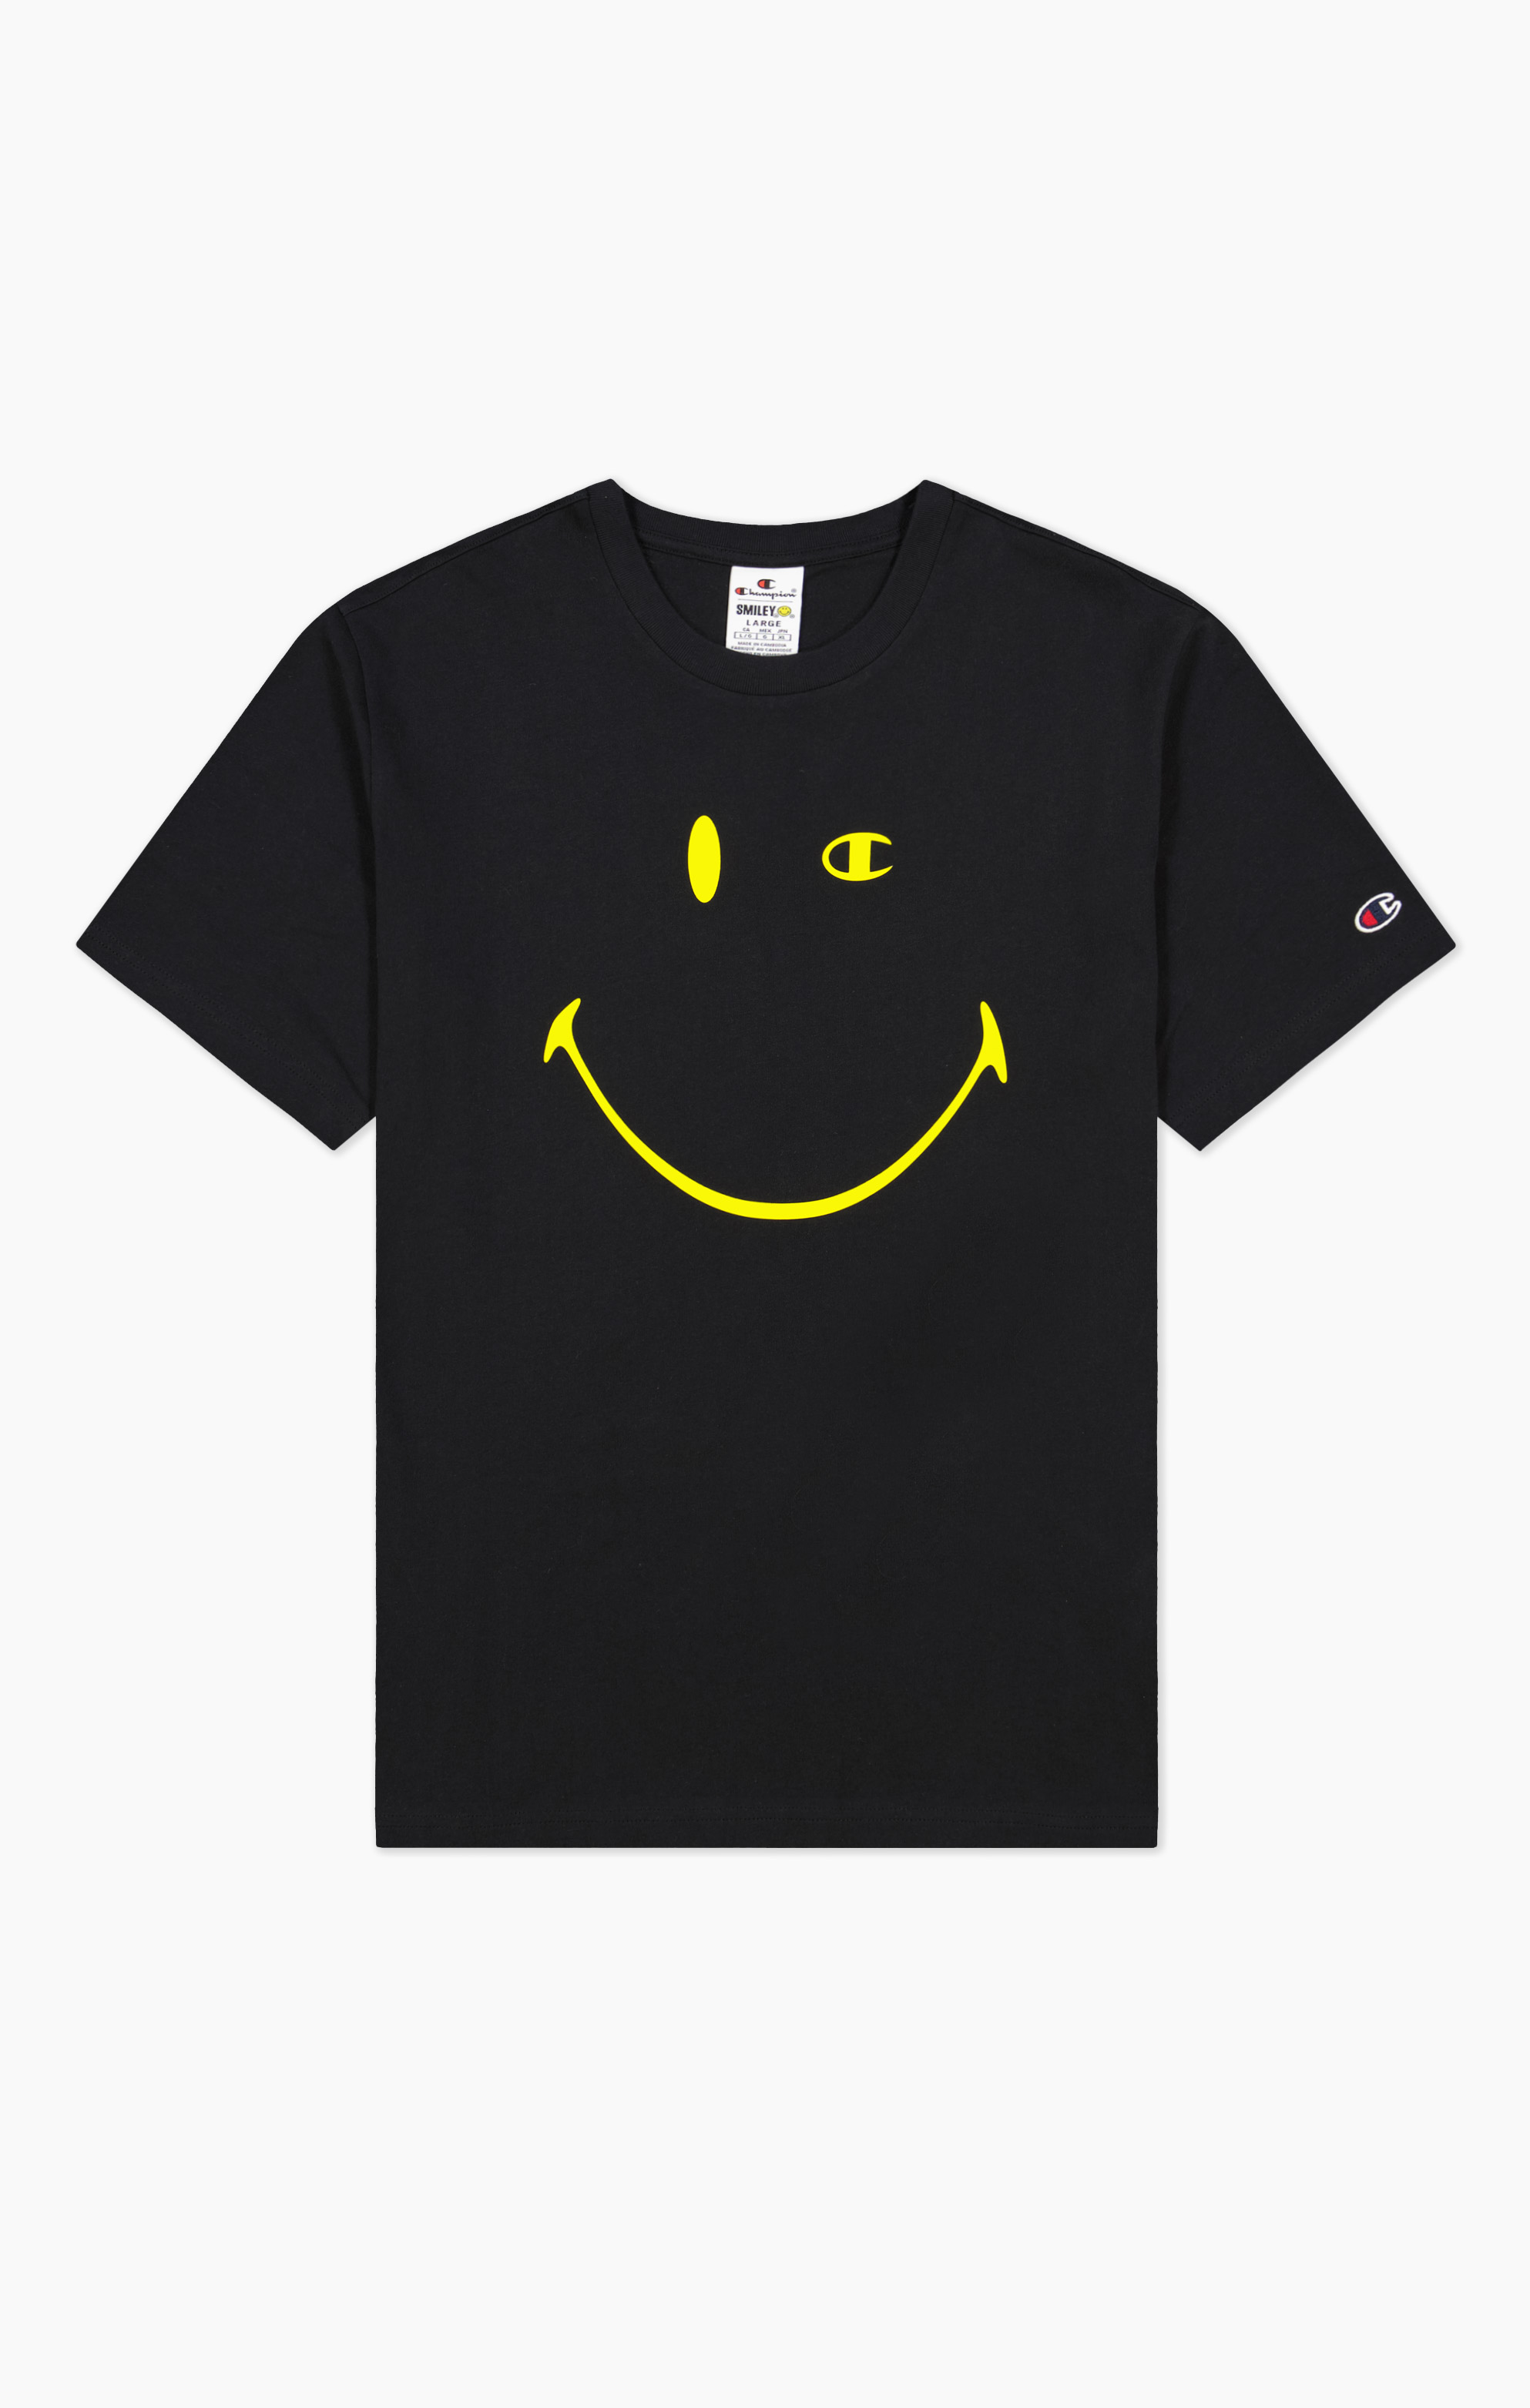 Champion x Smiley Allover T-Shirt in schwarz zum 50 Geburtstag von Smiley 1972-2022 